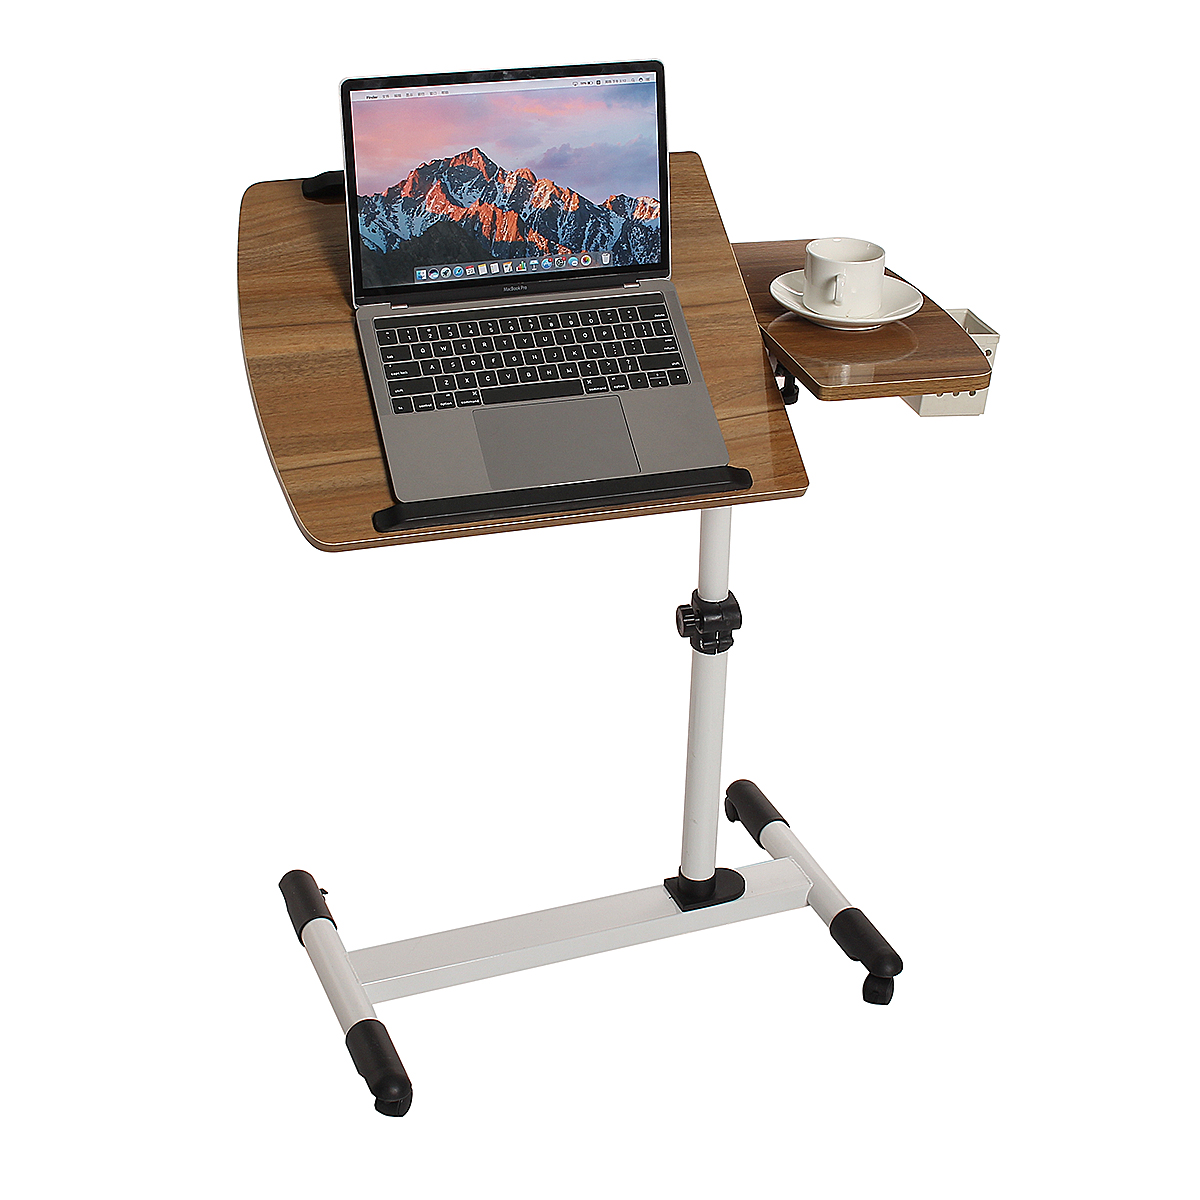 Mobile Rolling Laptop Desk Computer Table Stand Adjustable Bed Bedside